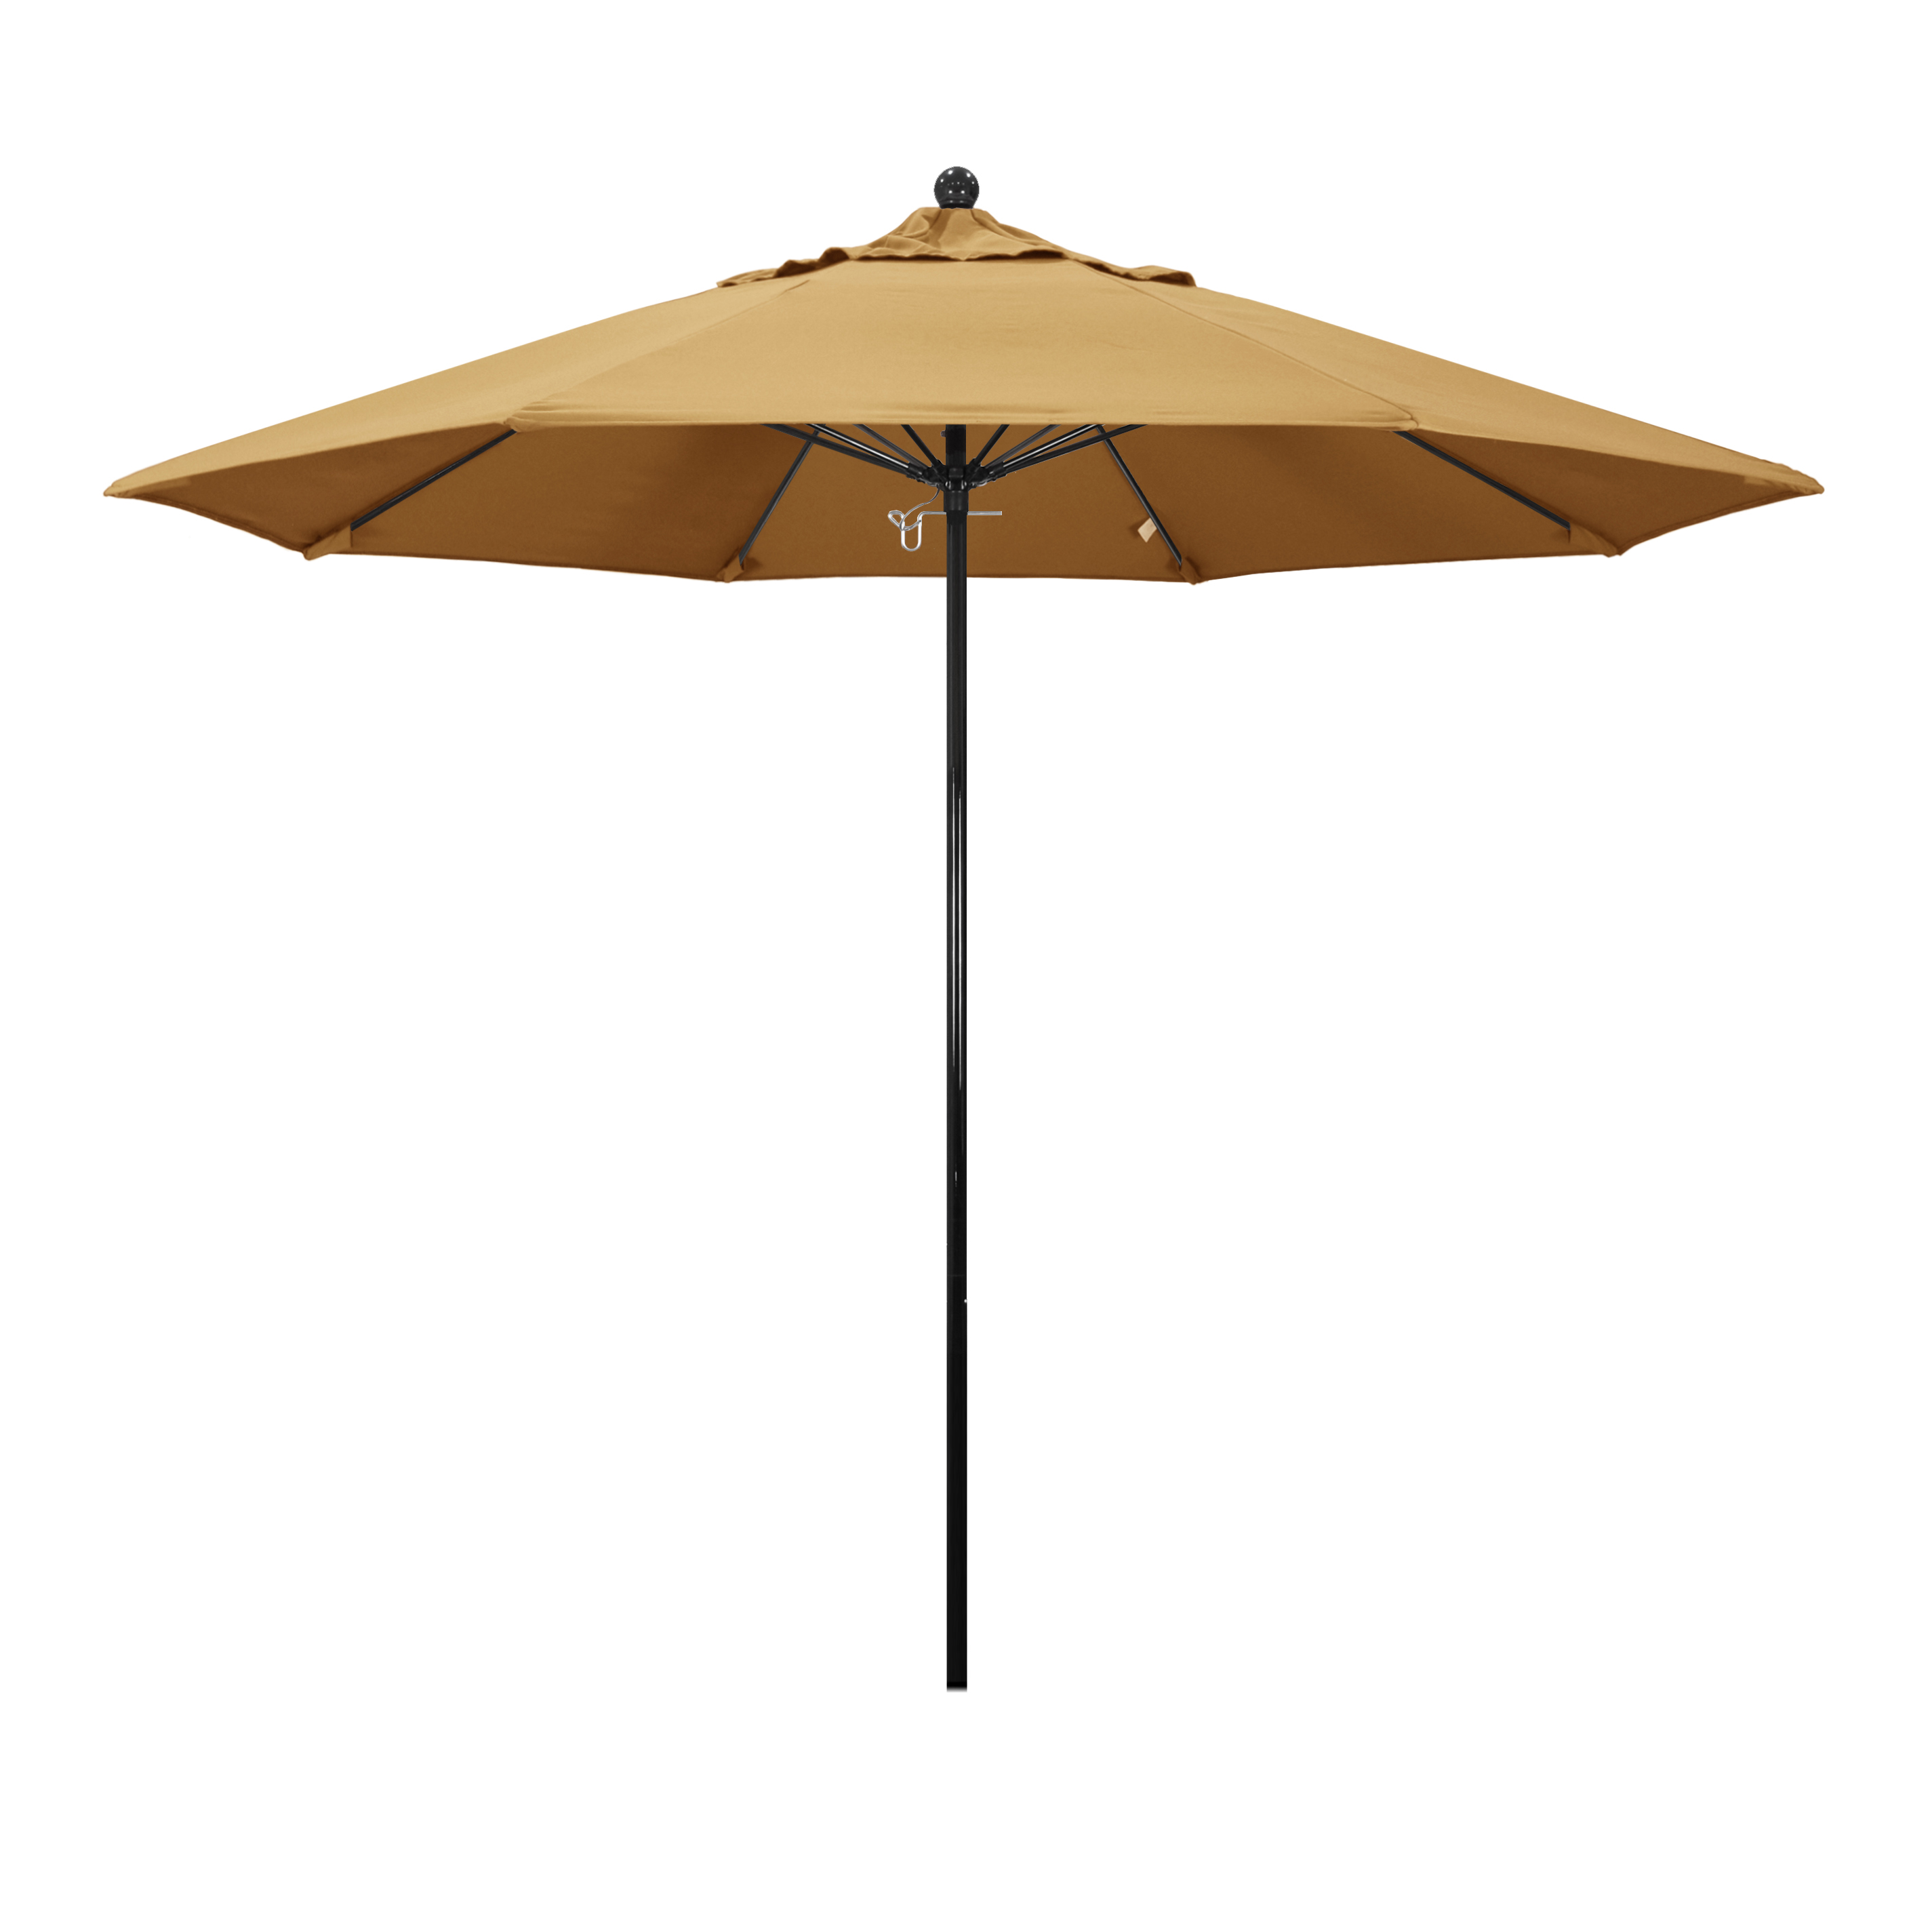 Effo908-5414 9 Ft. Complete Fiberglass Pulley Open Market Umbrella - Black And Sunbrella-wheat